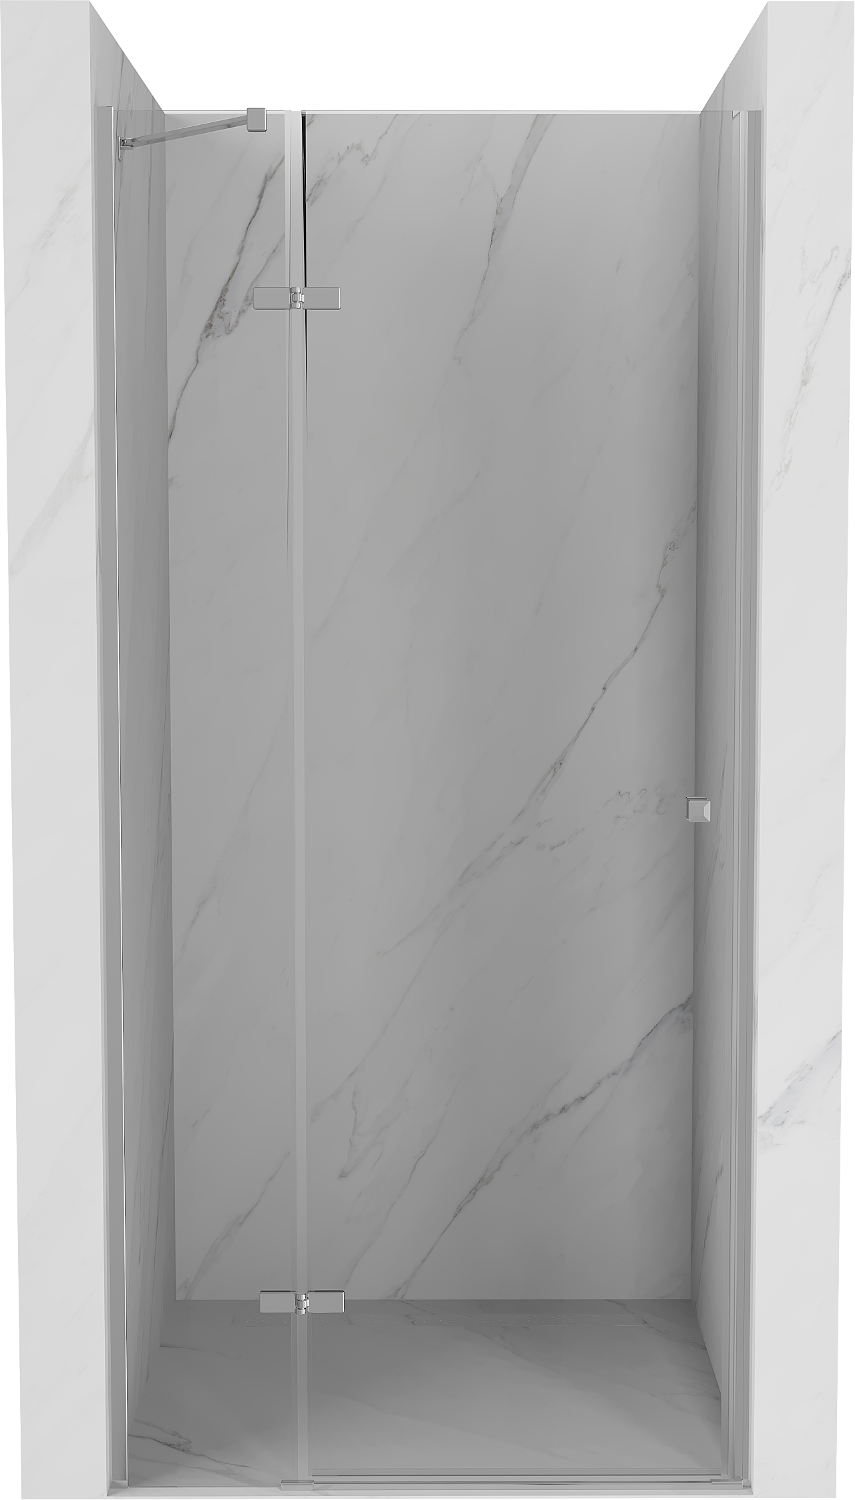 Mexen Roma drzwi prysznicowe uchylne 95 cm, transparent, chrom - 854-095-000-01-00